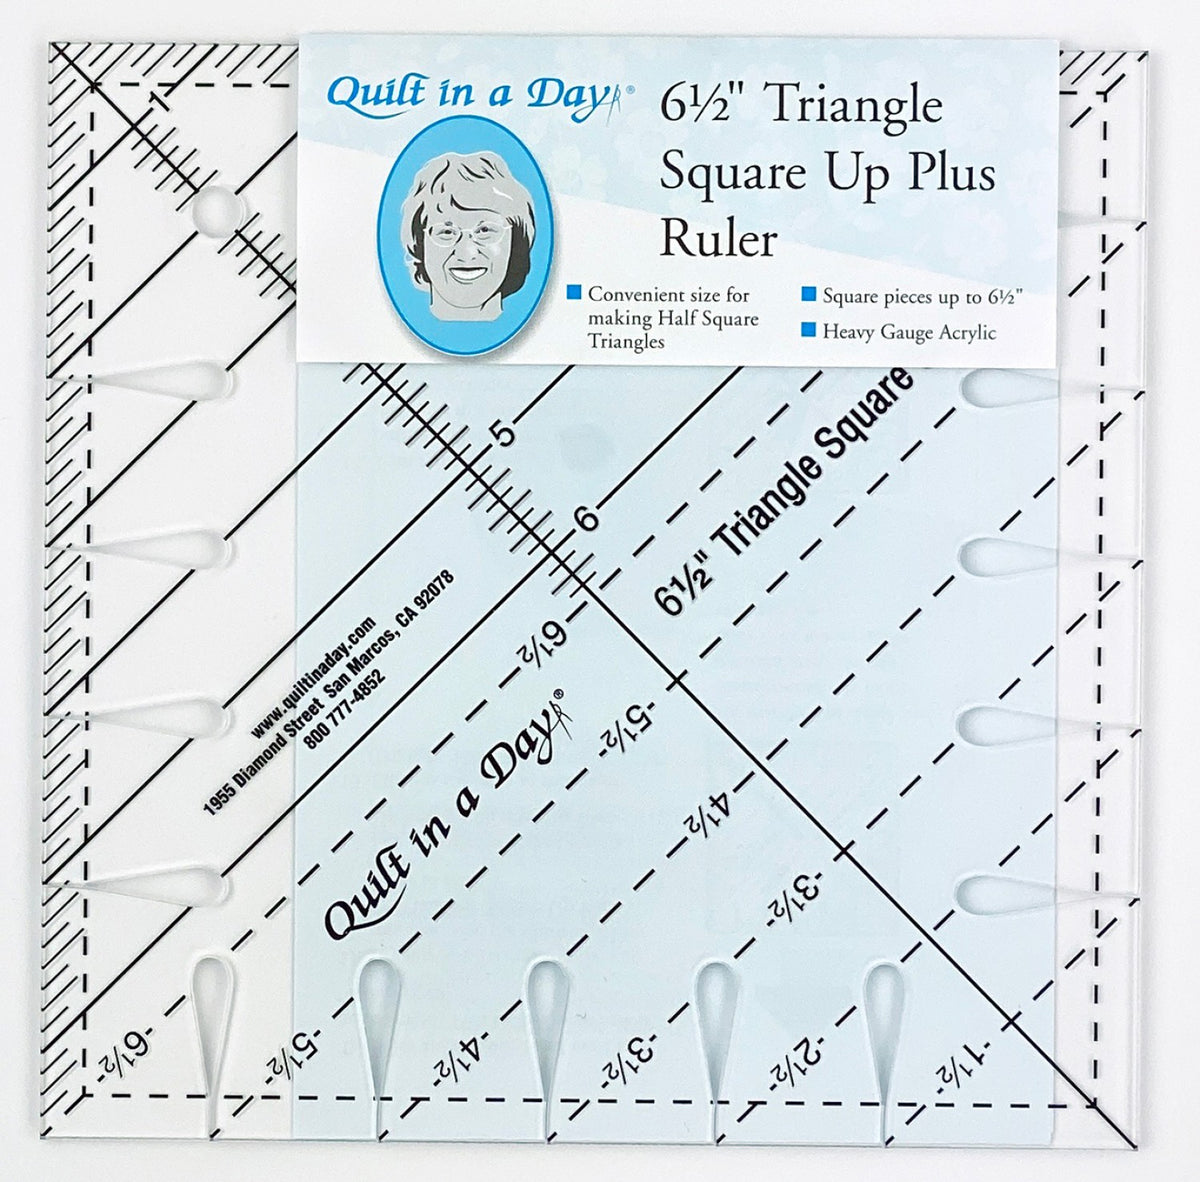 Quick Trim & Circle Ruler XL CGRMT5 SKU 64179